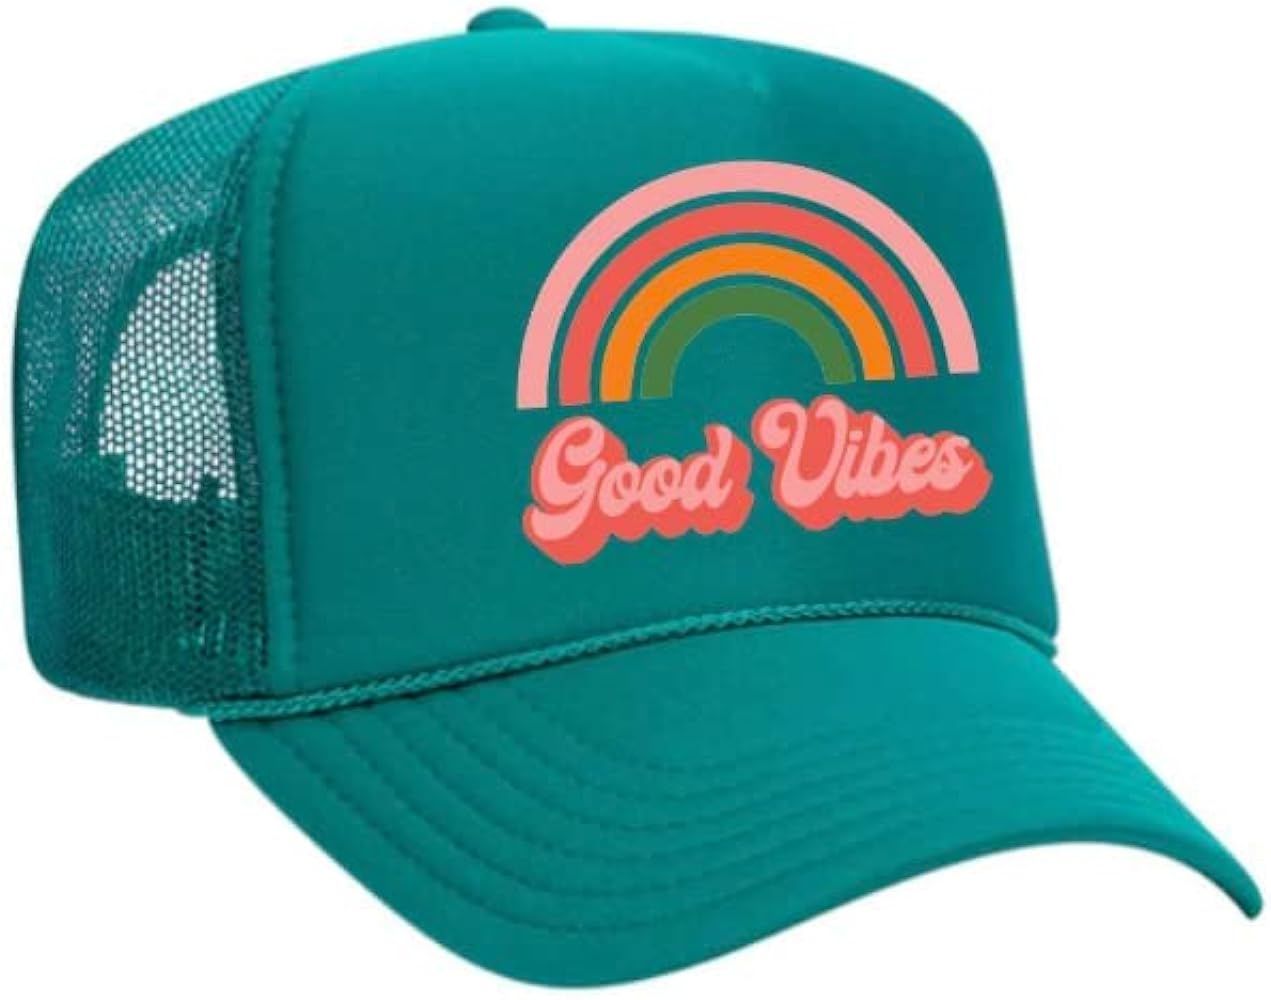 Good Vibes Rainbow Trucker Hat | Amazon (US)